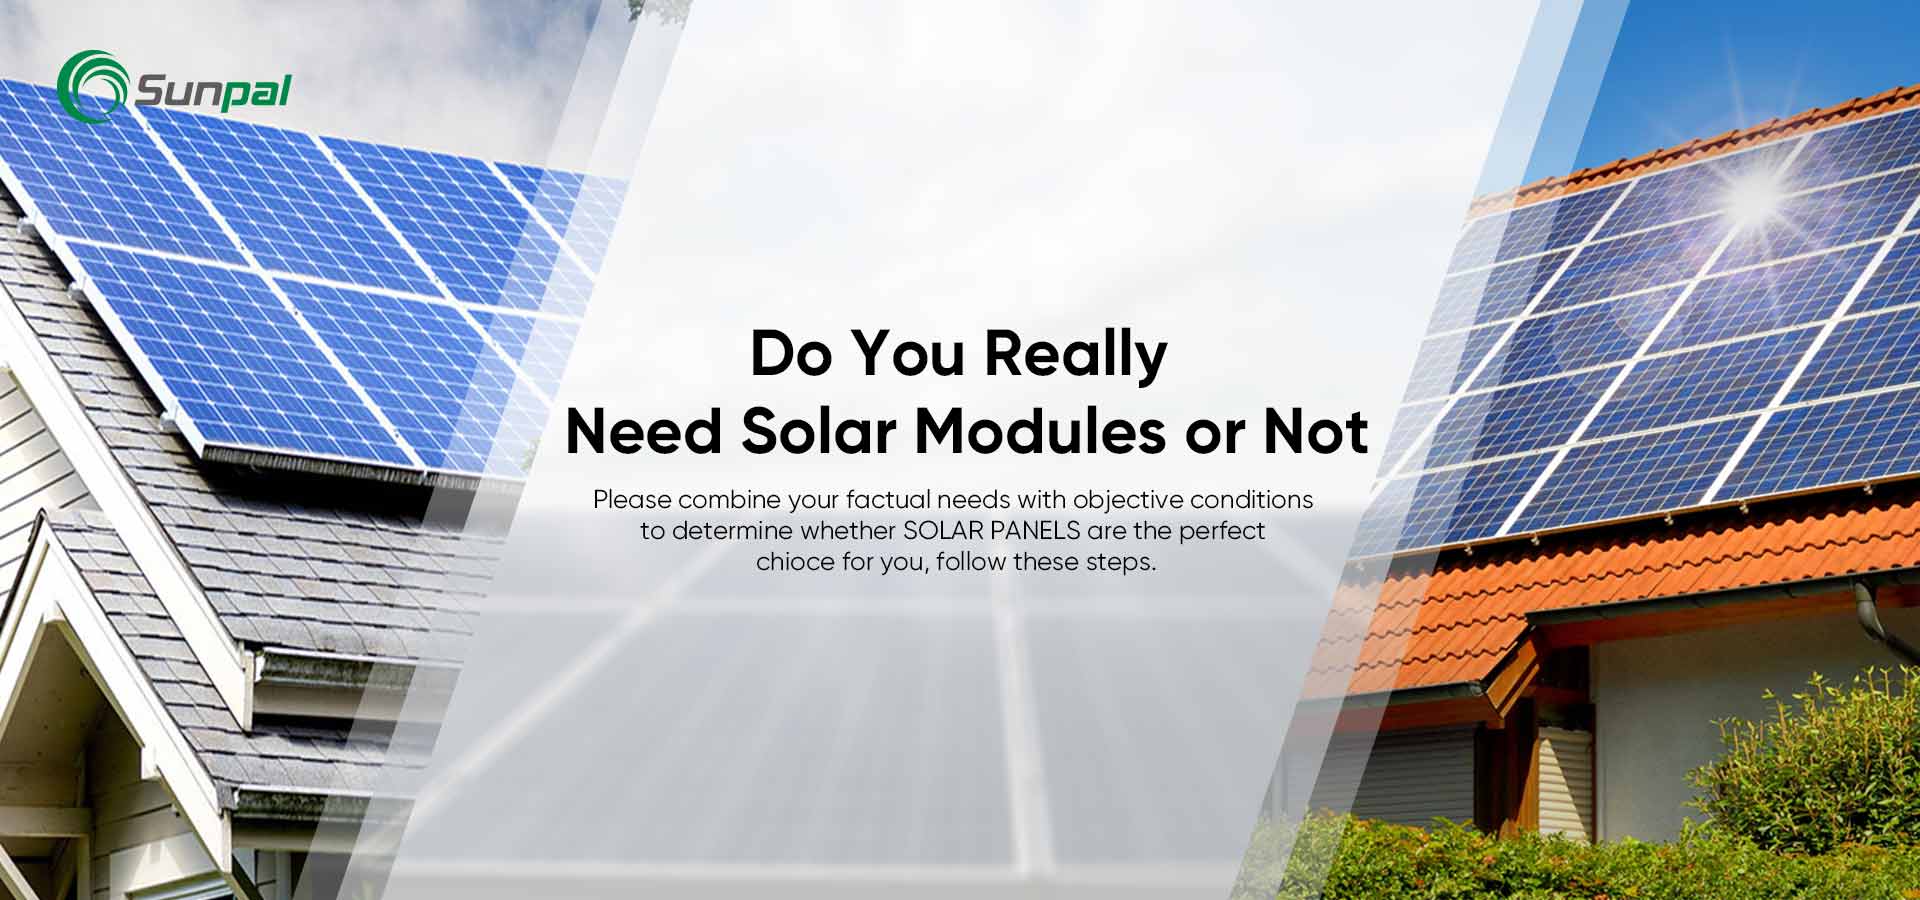 Os painéis solares são adequados para você? 8 sinais de que você deve se tornar solar